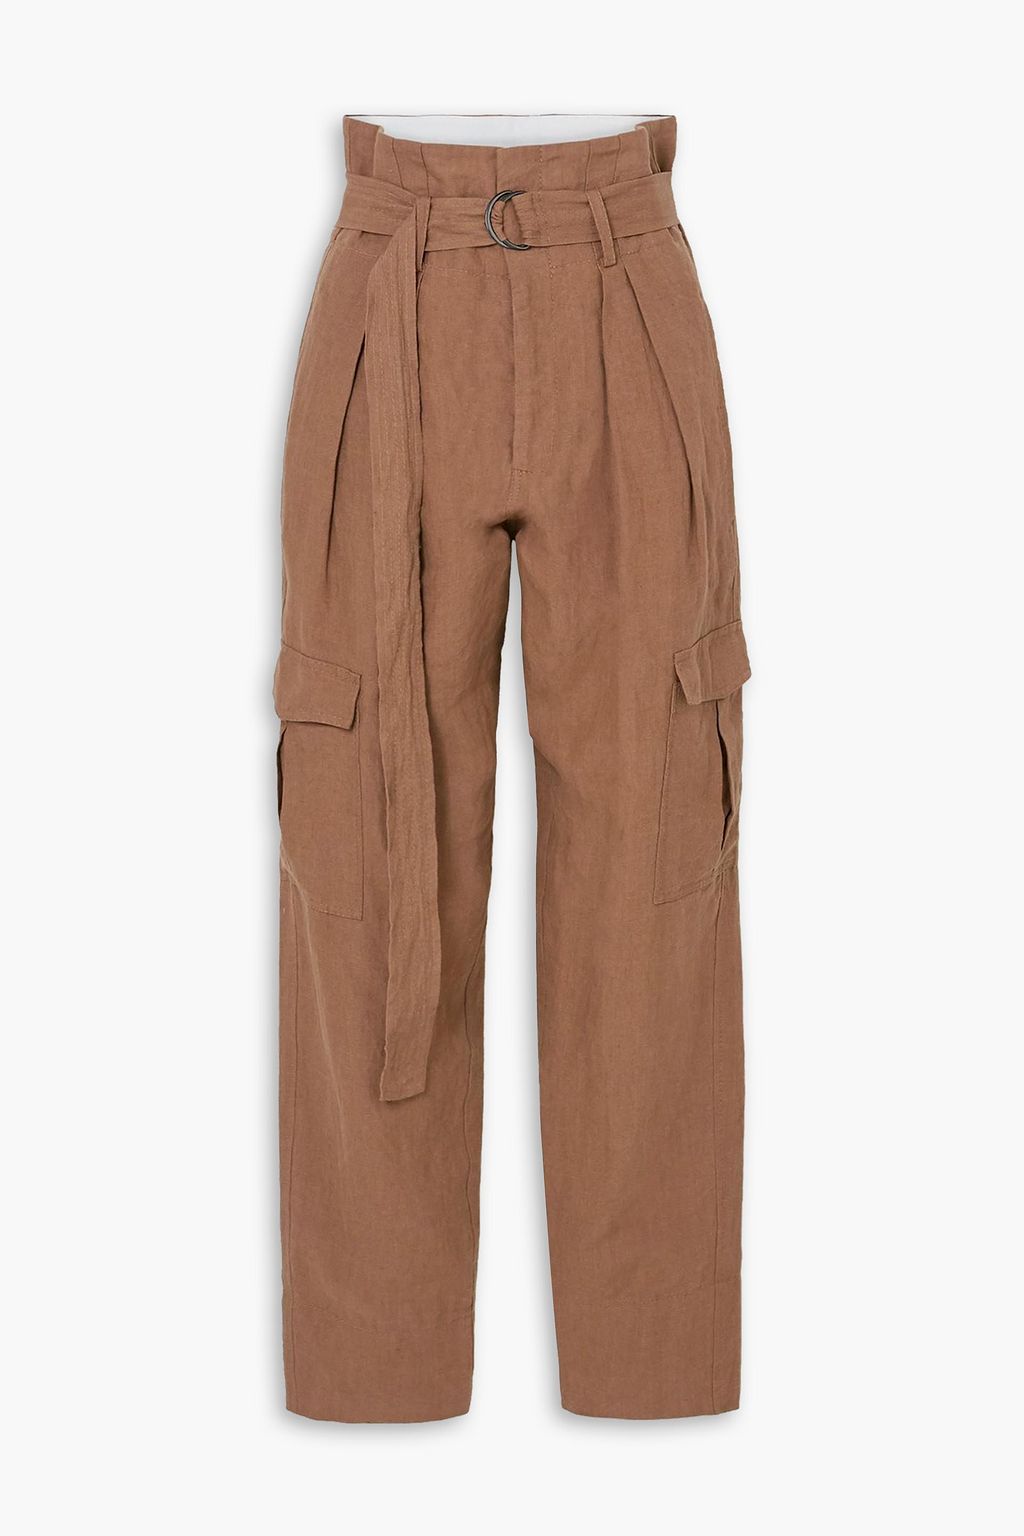 Льняные зауженные брюки с поясом Space For Giants BASSIKE, коричневый